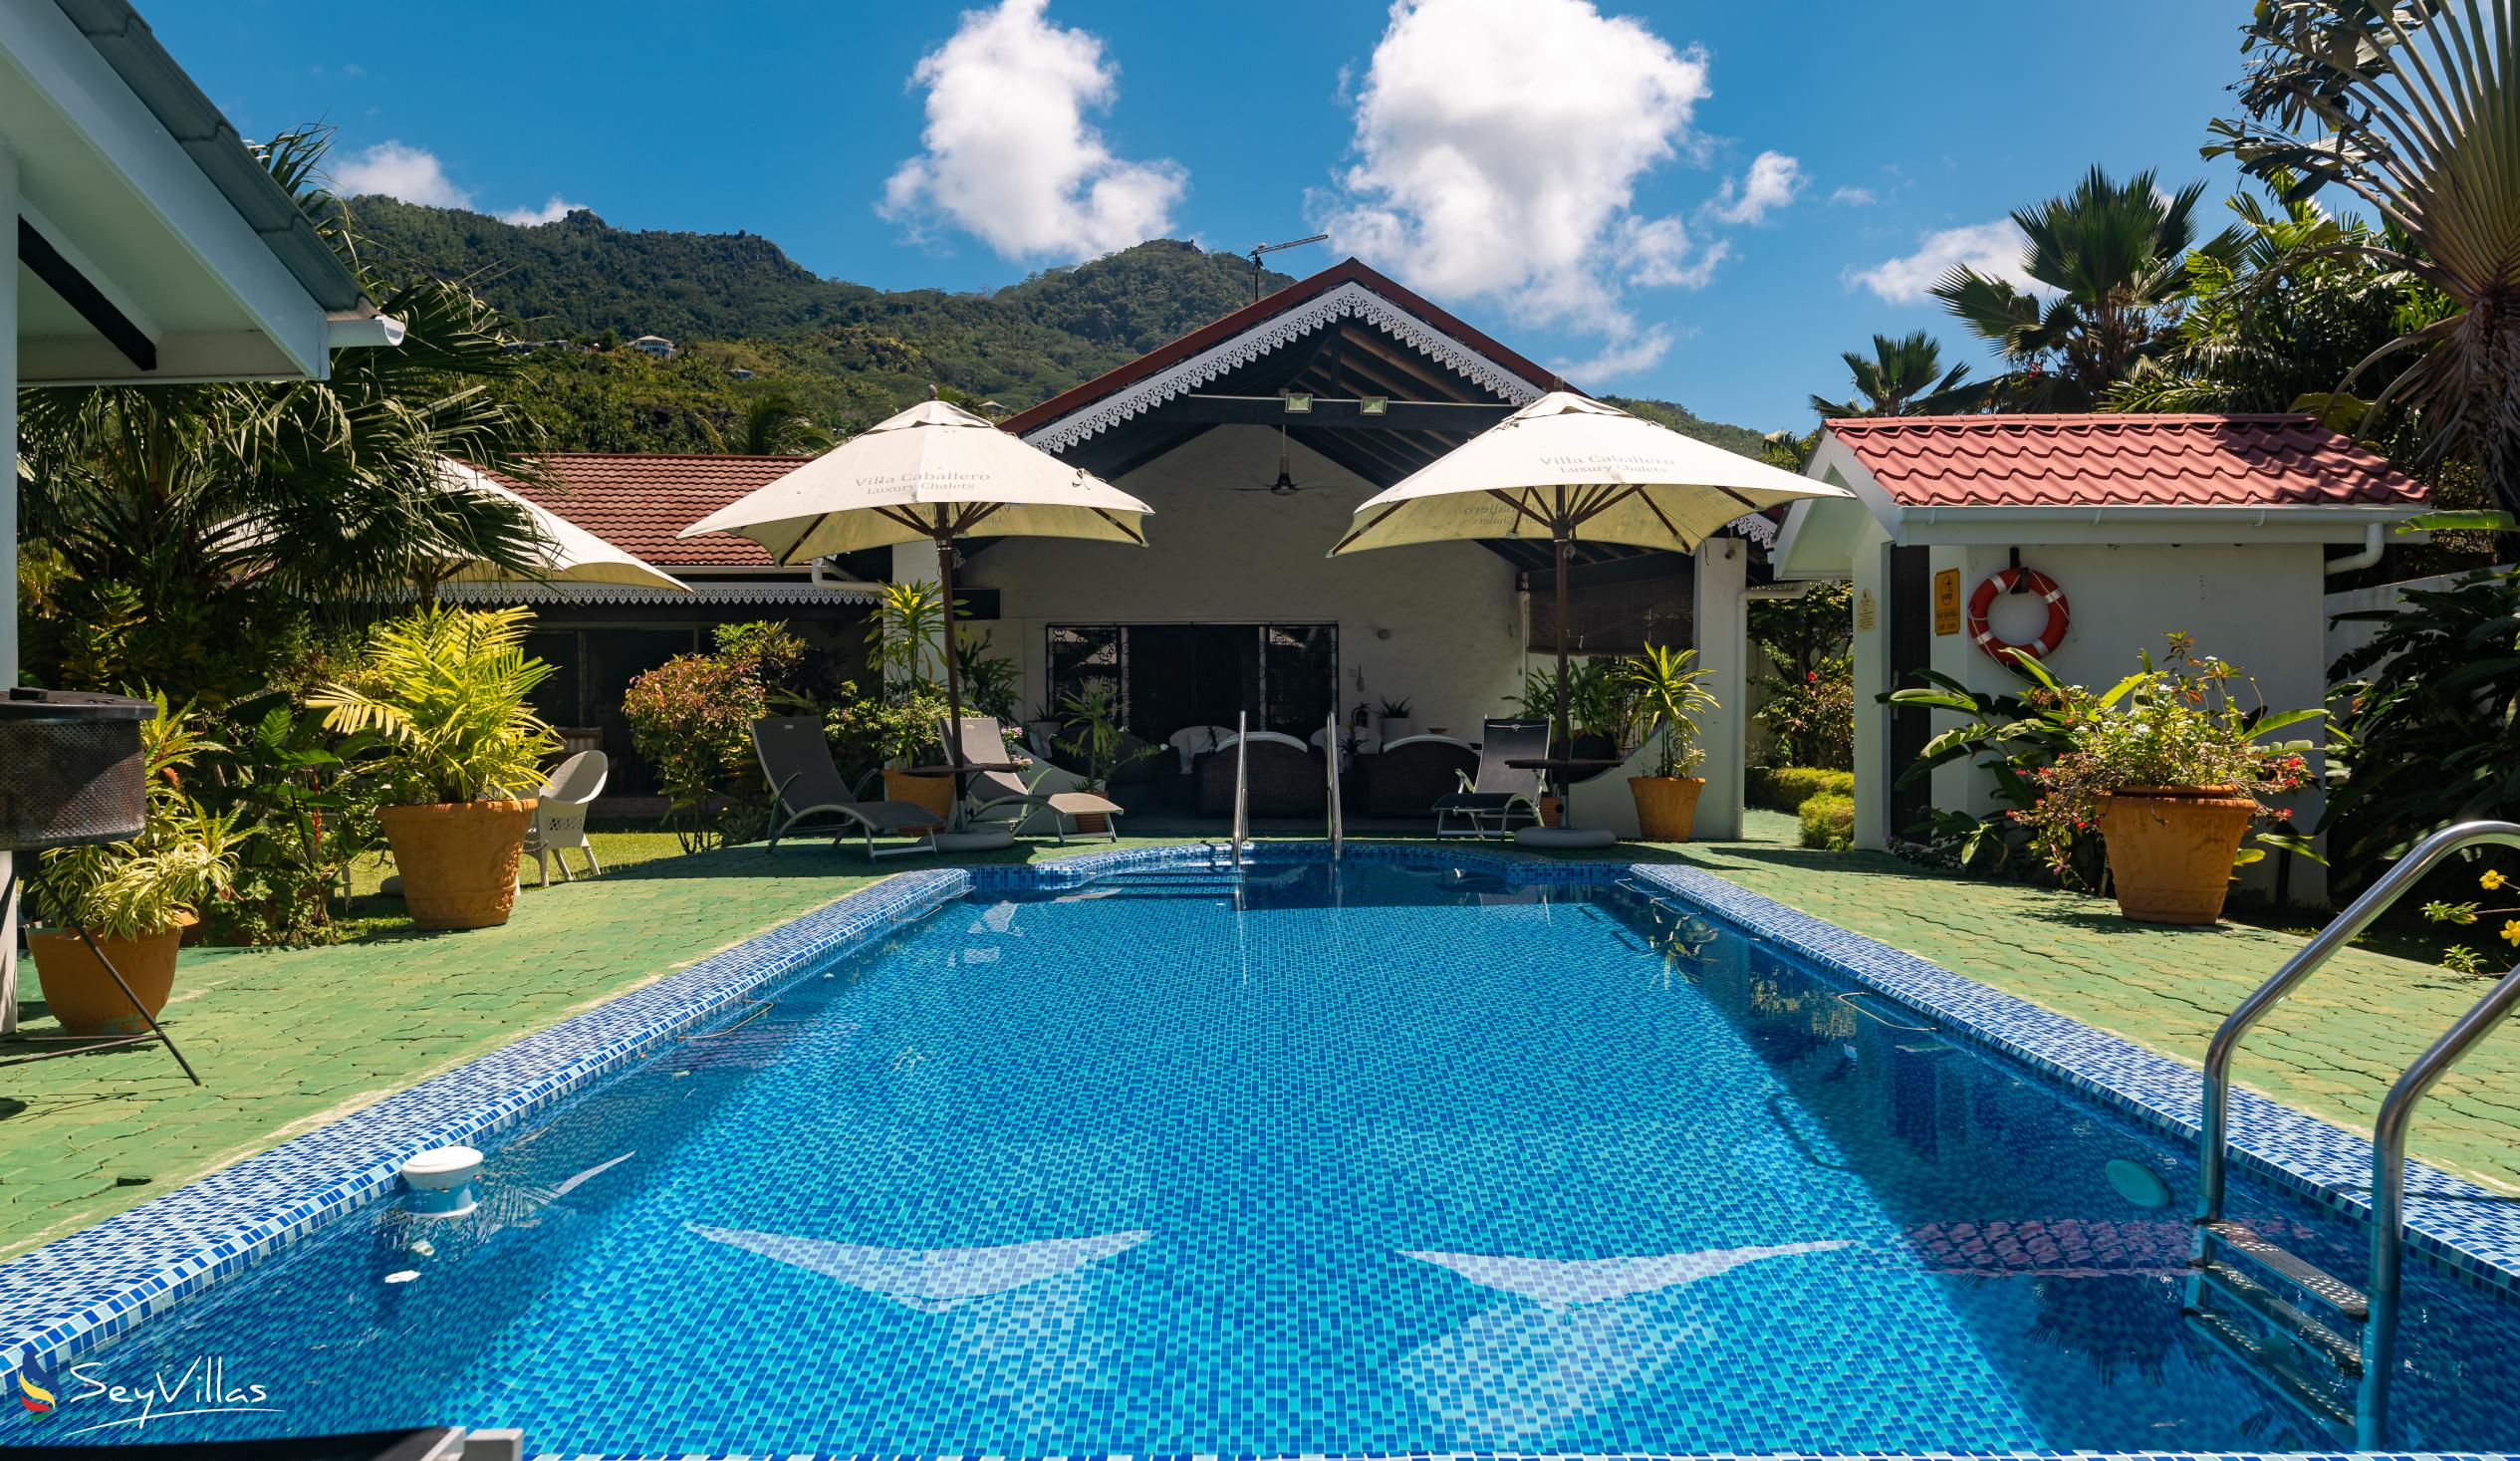 Foto 3: Villa Caballero - Extérieur - Mahé (Seychelles)